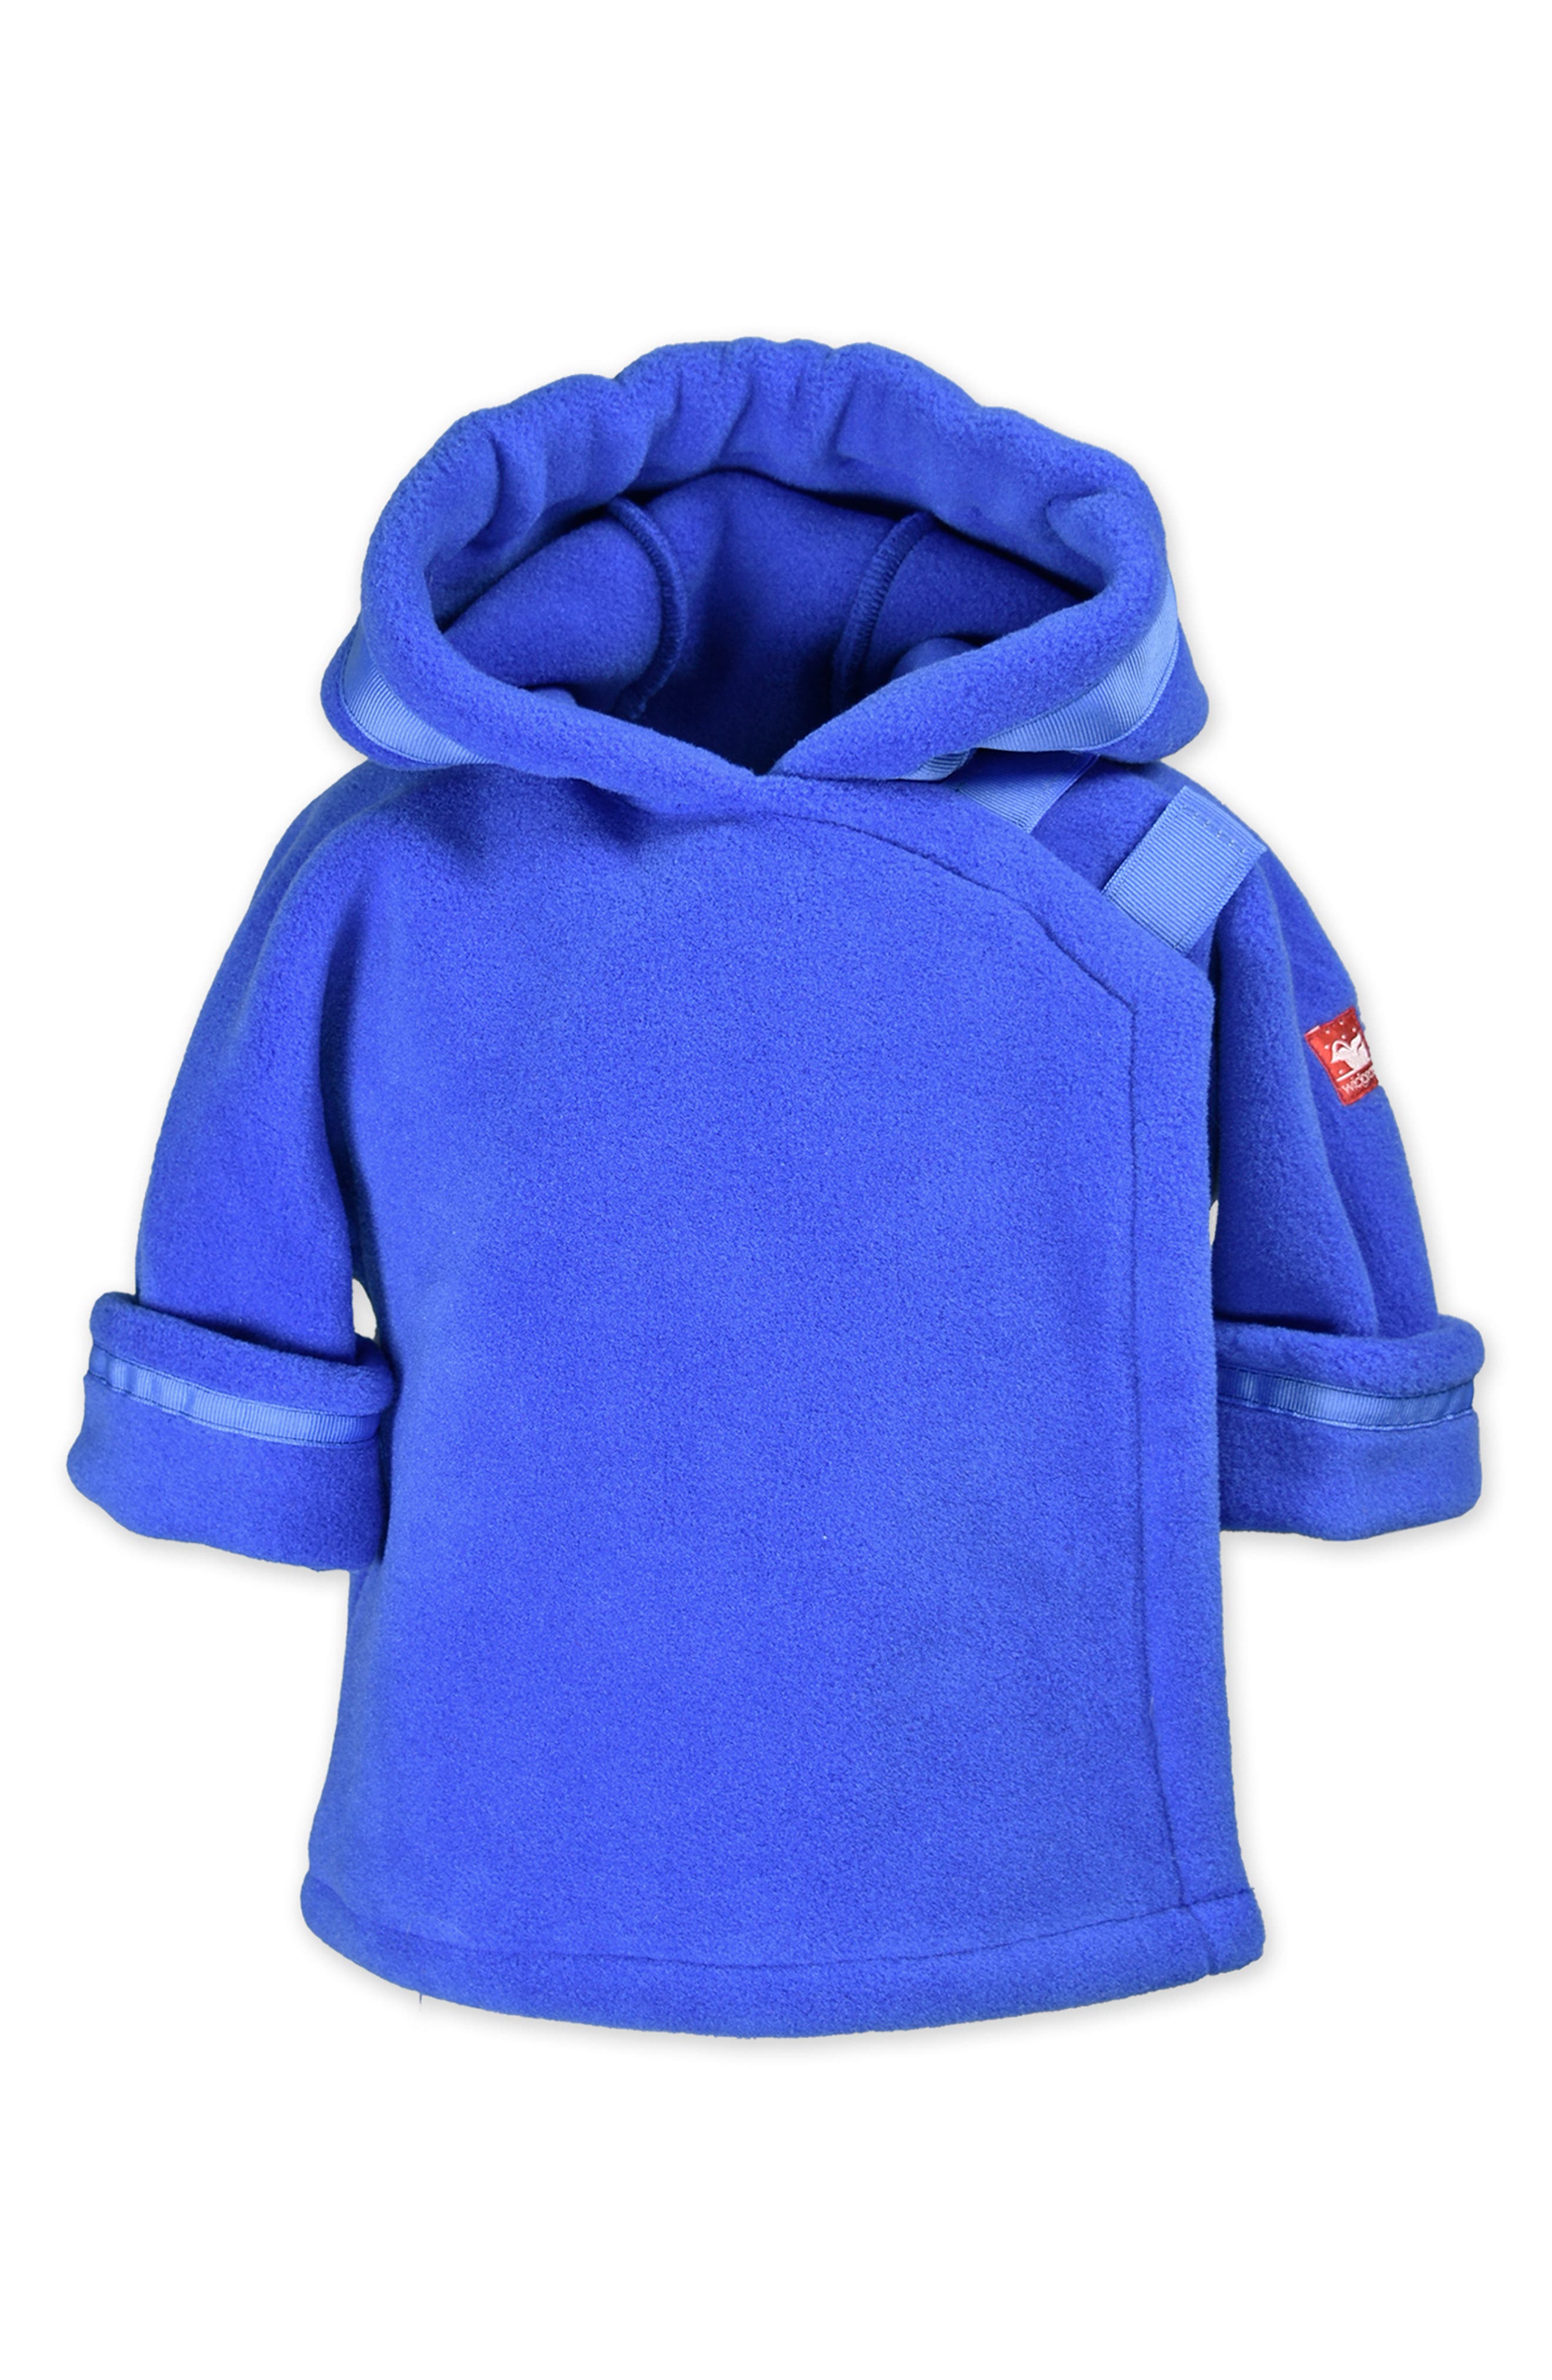 American Widgeon Girls Flower Ruffle EASTER Jacket Hat Fleece Blue Size 3 4 6